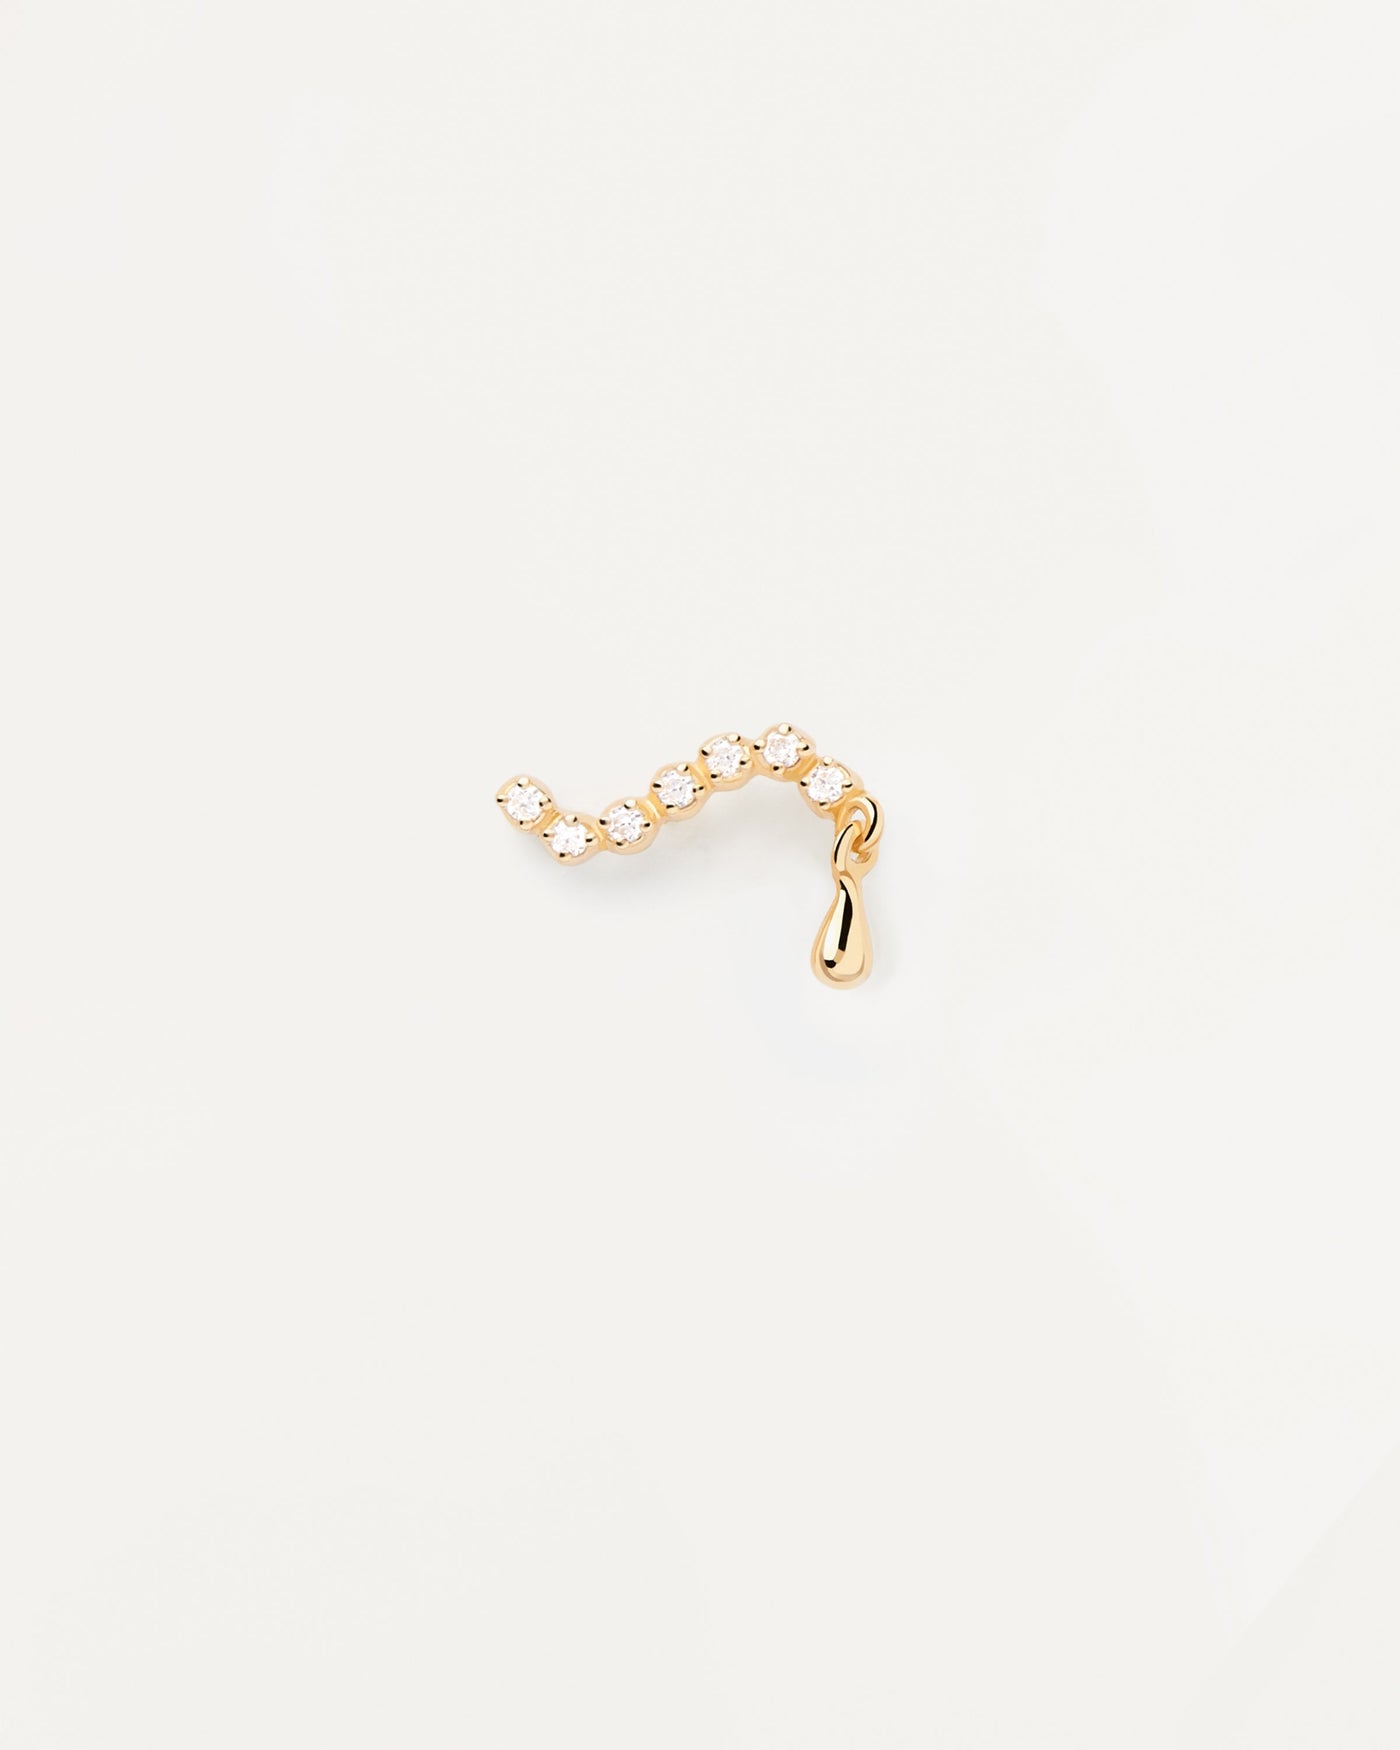 Swim Einzelner Stud Ohrringe. Wellenförmiger Piercing-Ohrring aus vergoldetem Silber mit weißem Zirkonia und Tropfenanhänger. Erhalten Sie die neuesten Produkte von PDPAOLA. Geben Sie Ihre Bestellung sicher auf und erhalten Sie diesen Bestseller.